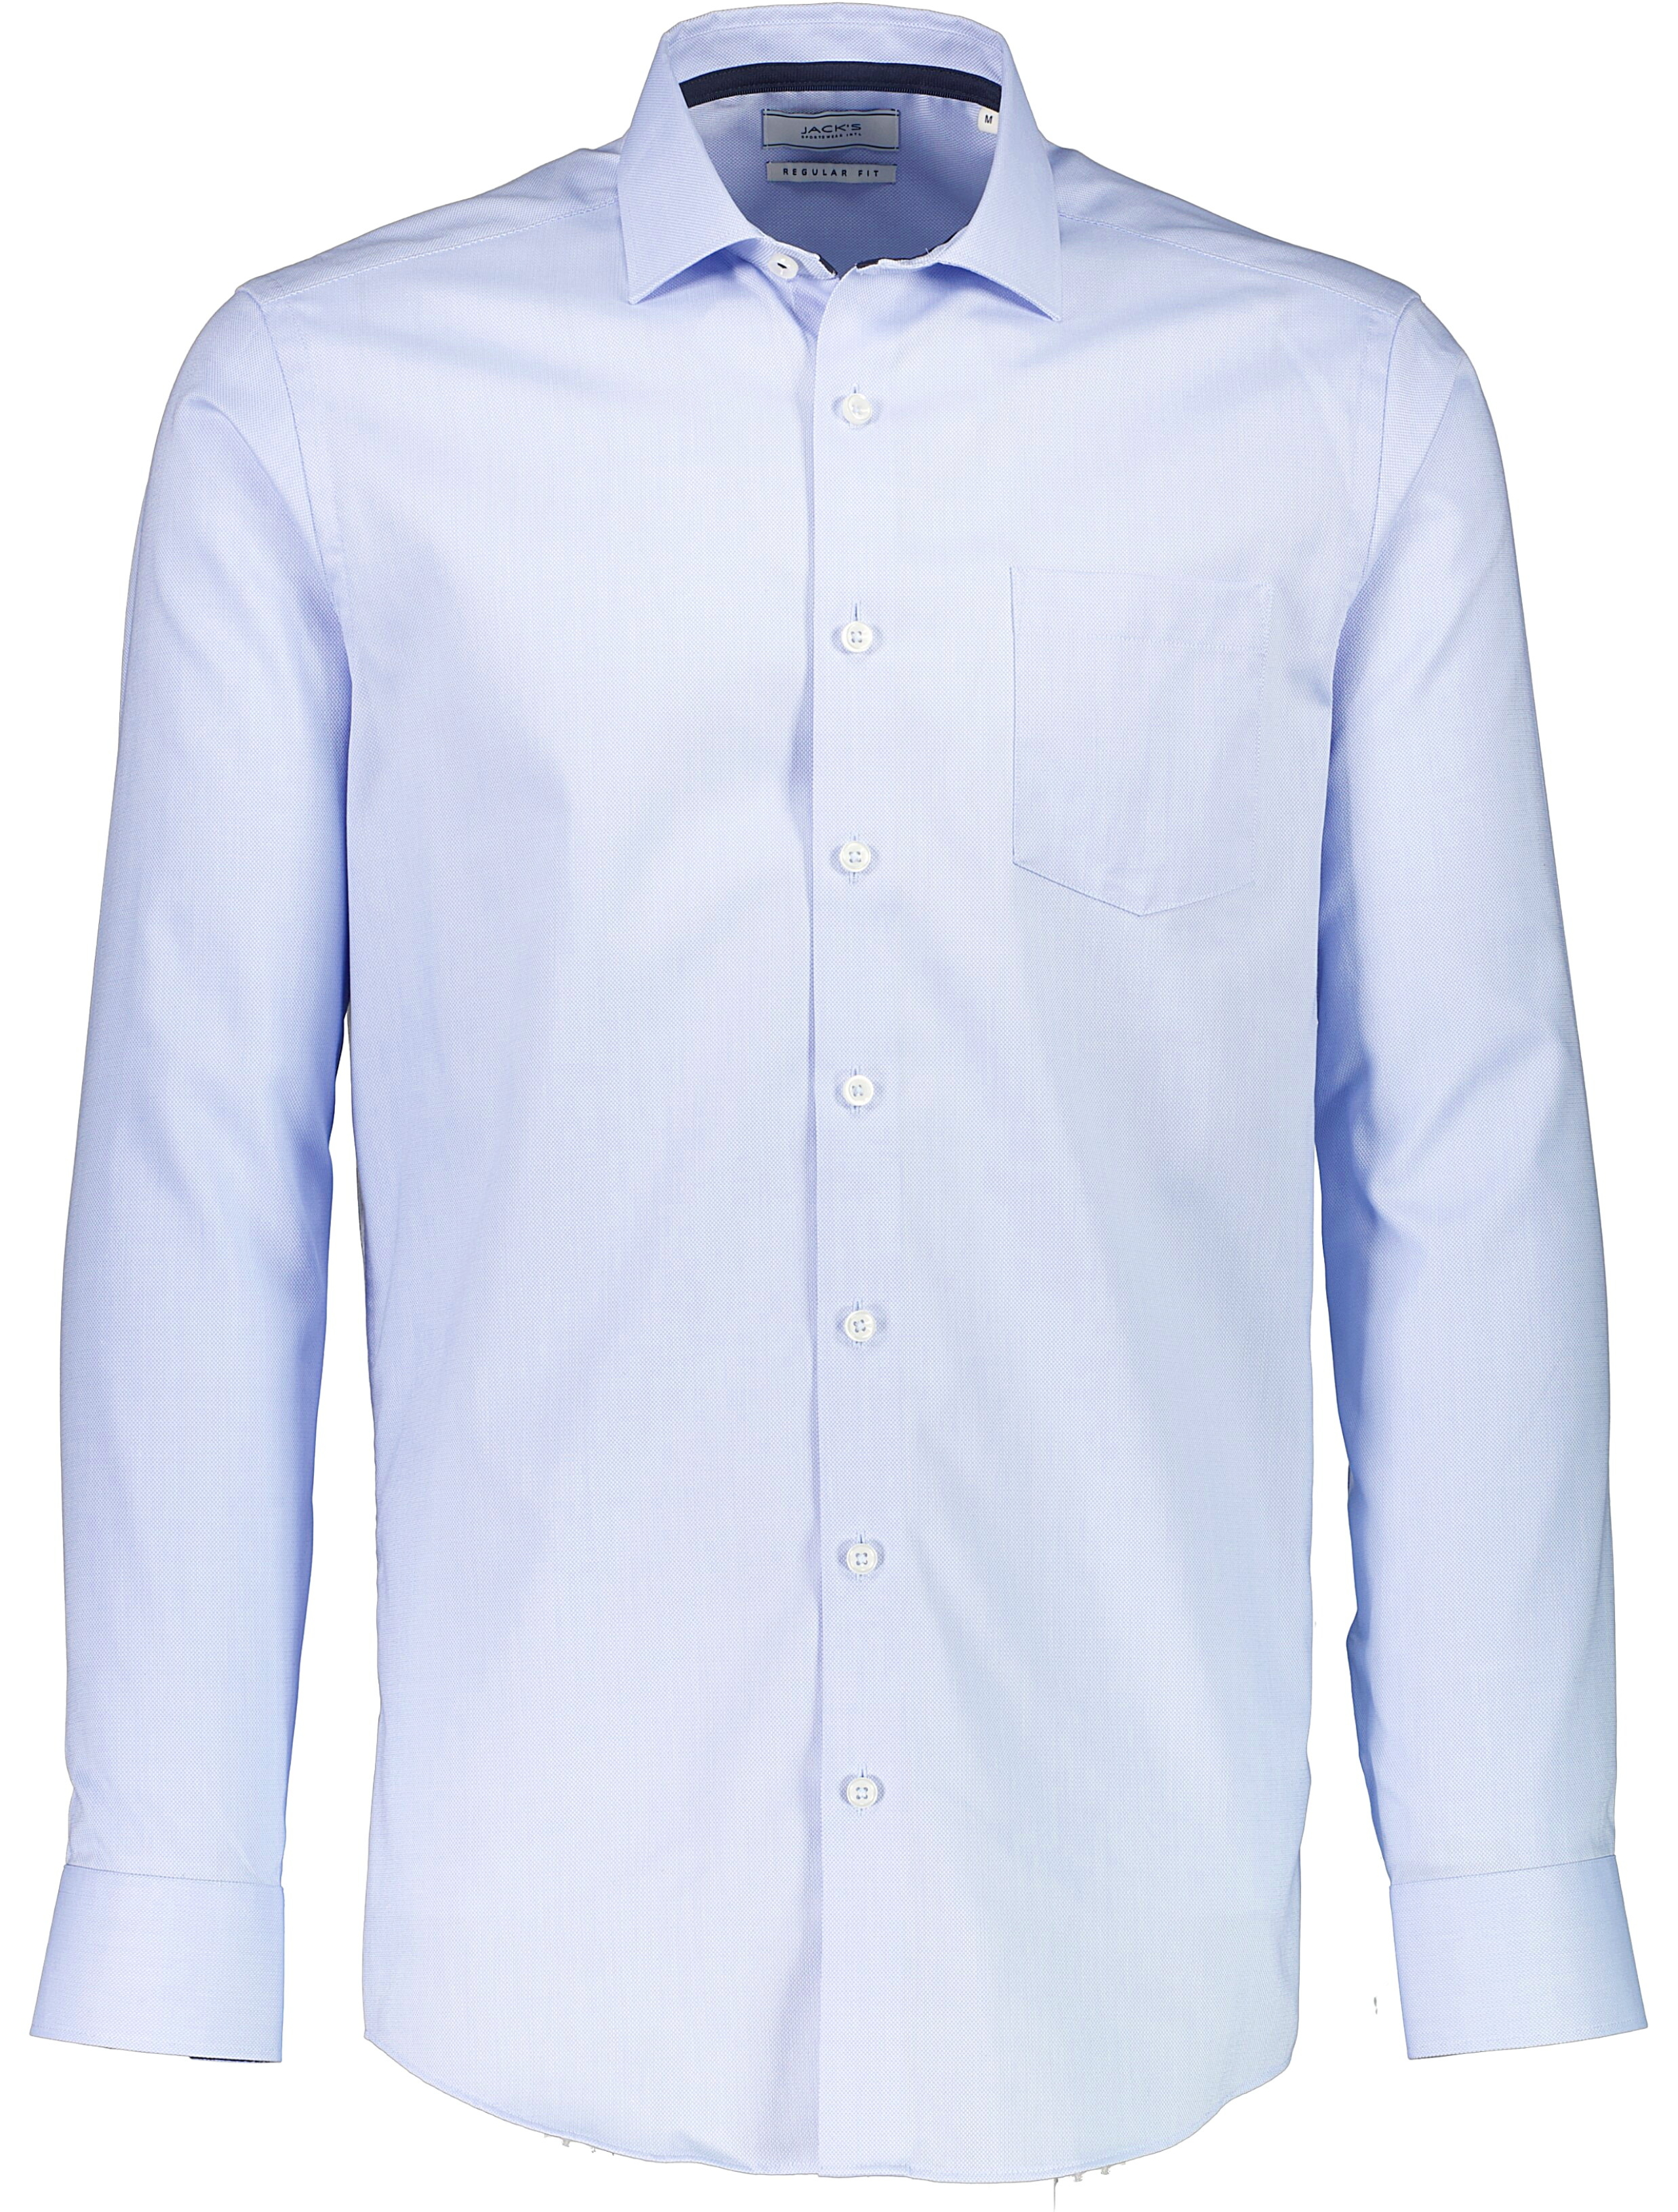 Jack's Casual skjorta blå / light blue